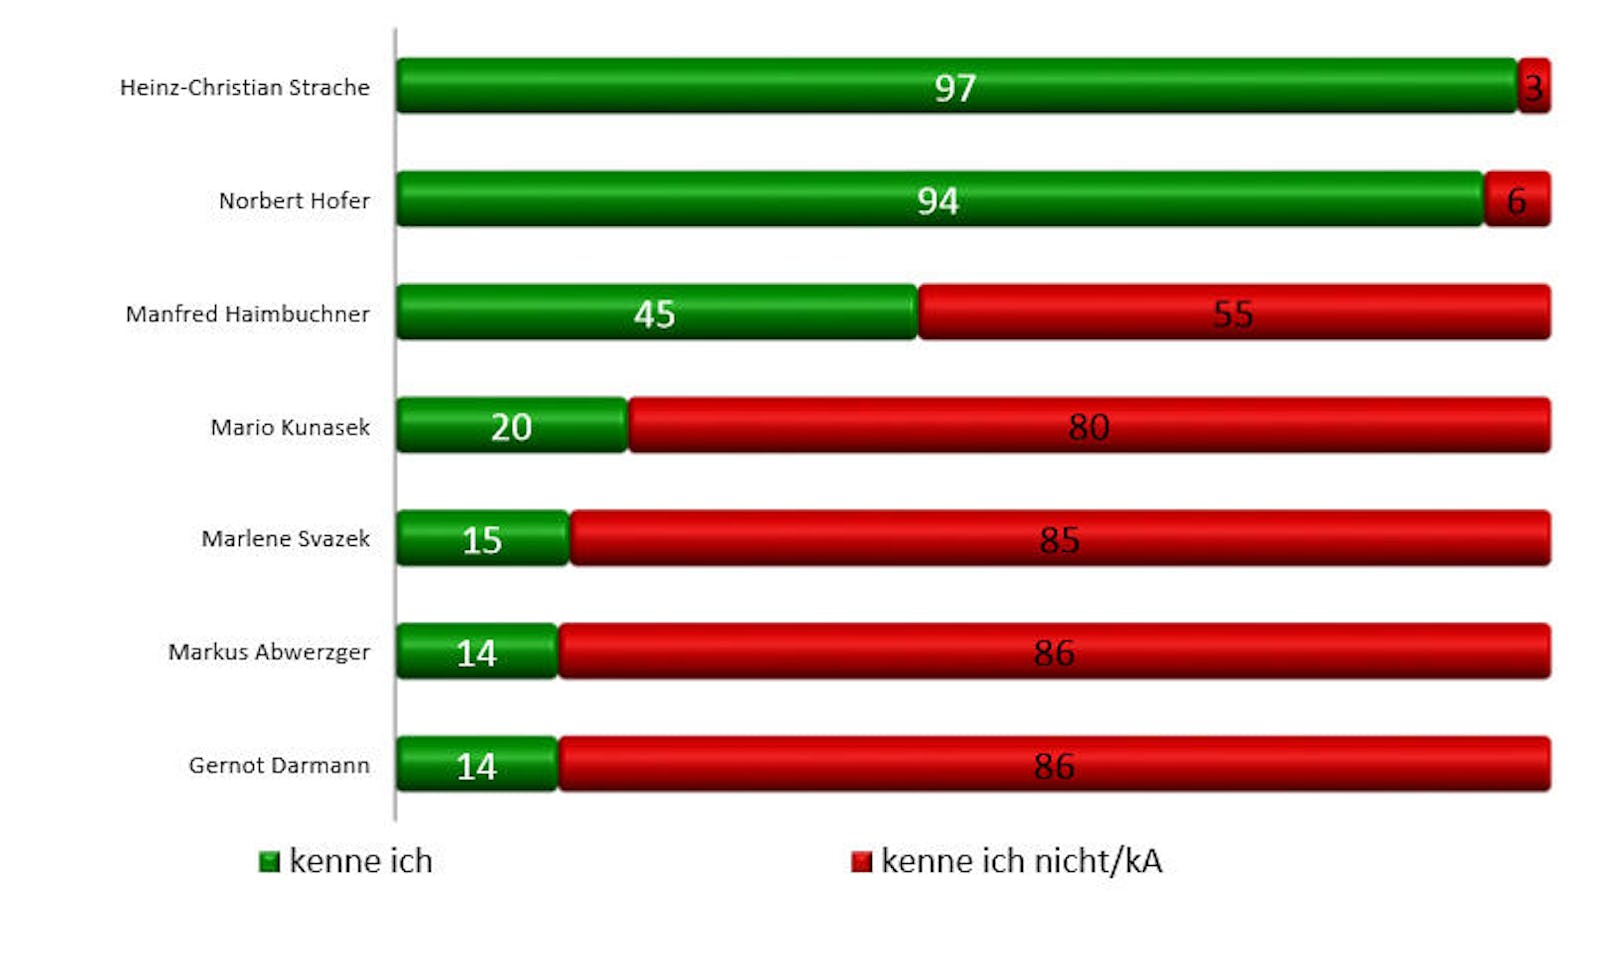 Bekanntheit von FPÖ-Politiker/innen in Prozent.